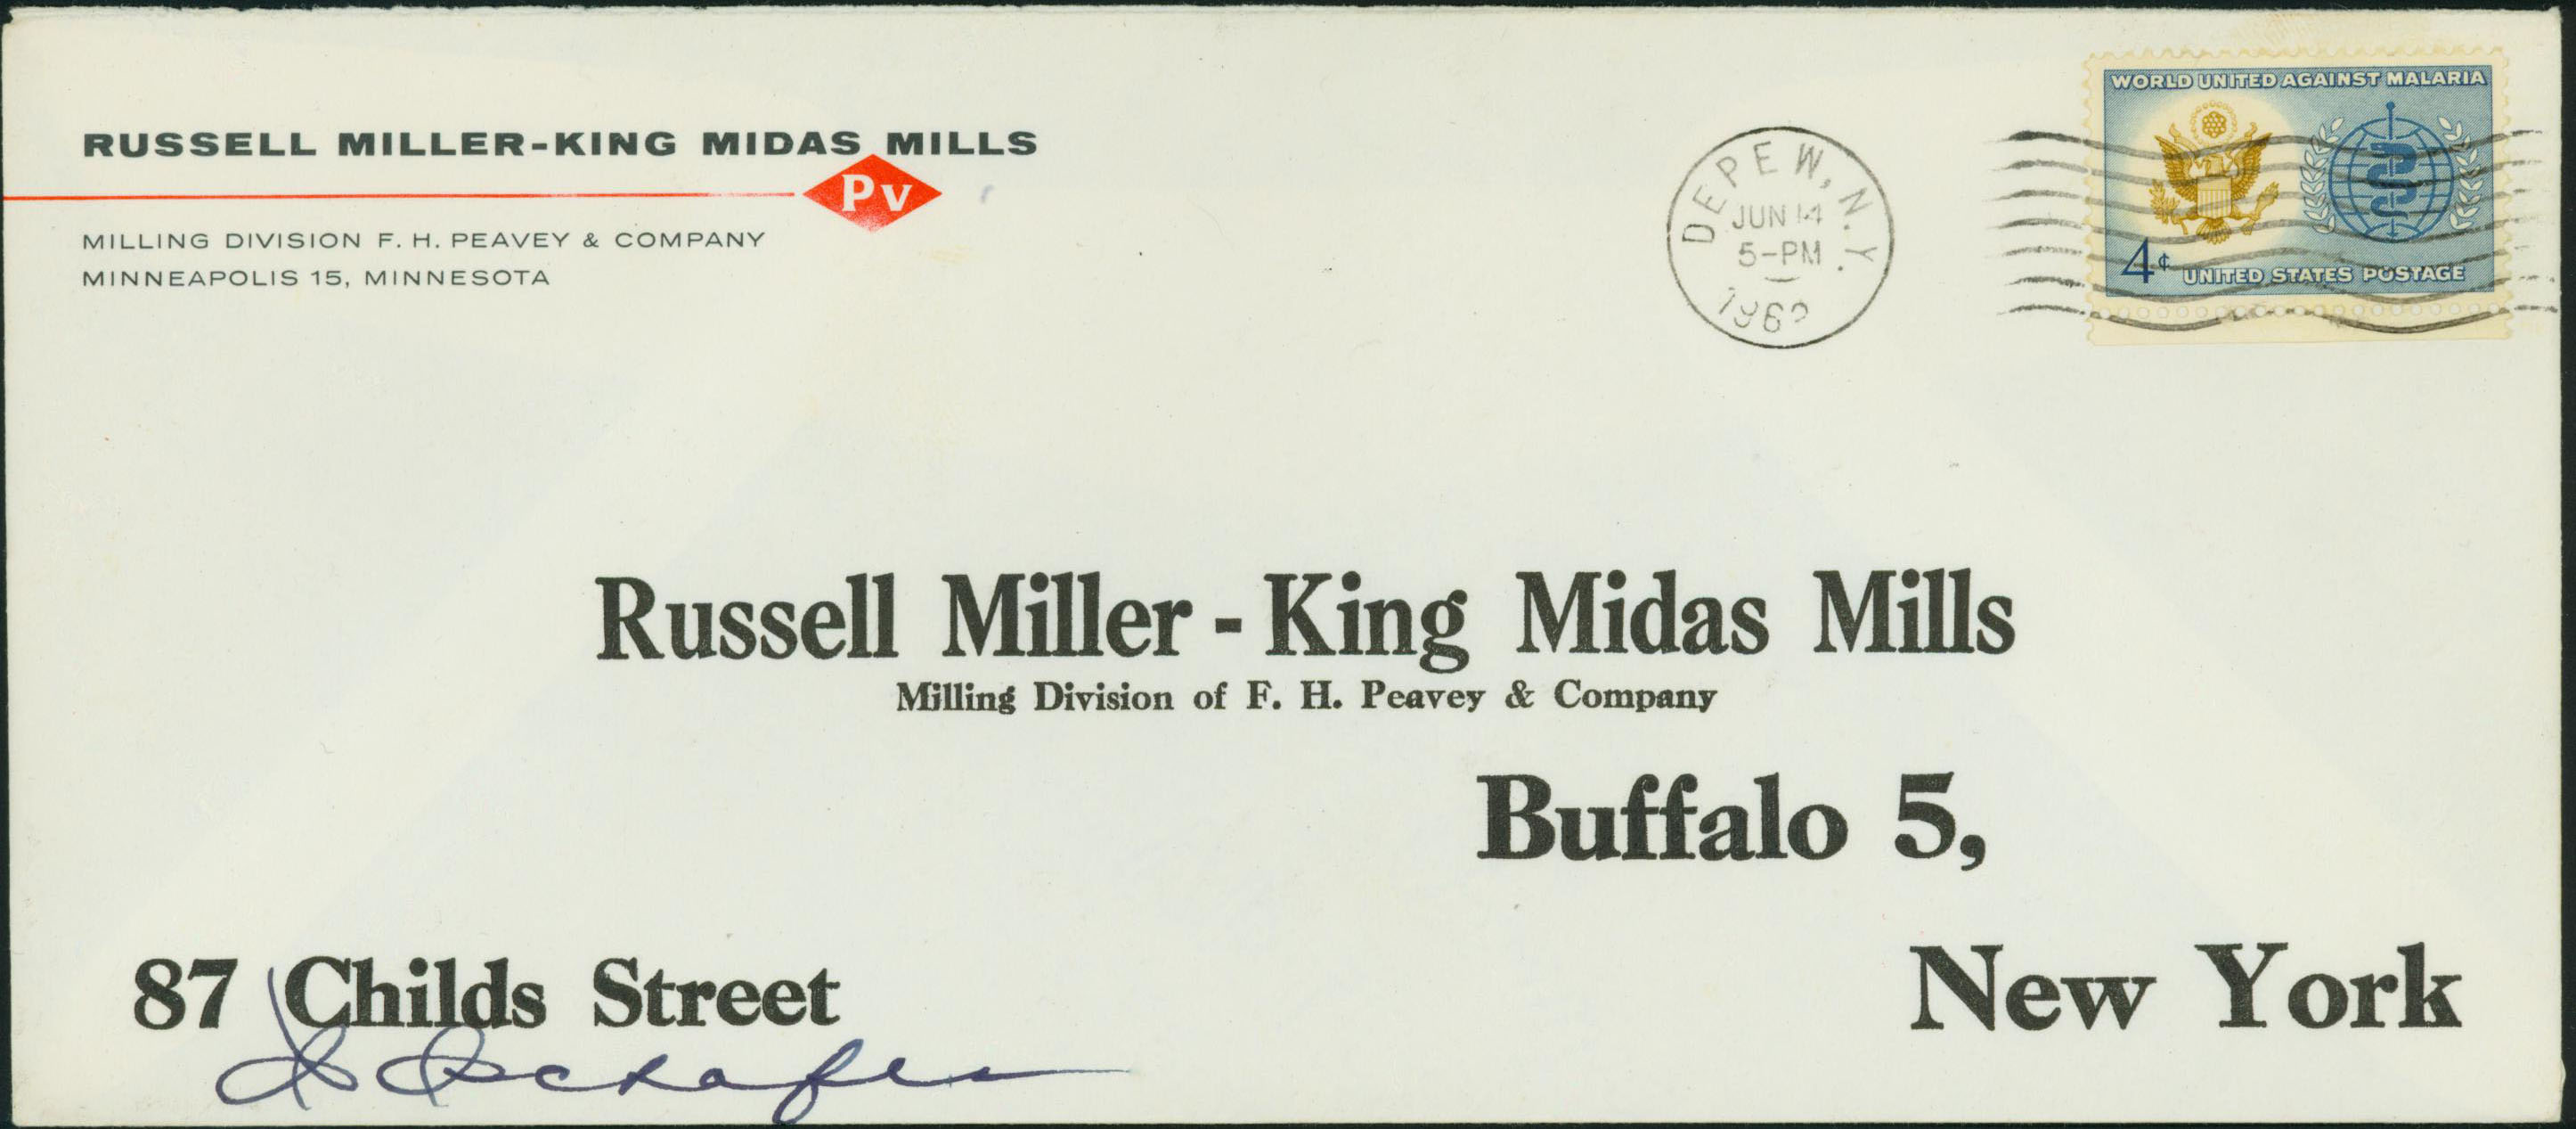 1962, June 14th, 5:00 PM. Depew, NY to Buffalo, NY